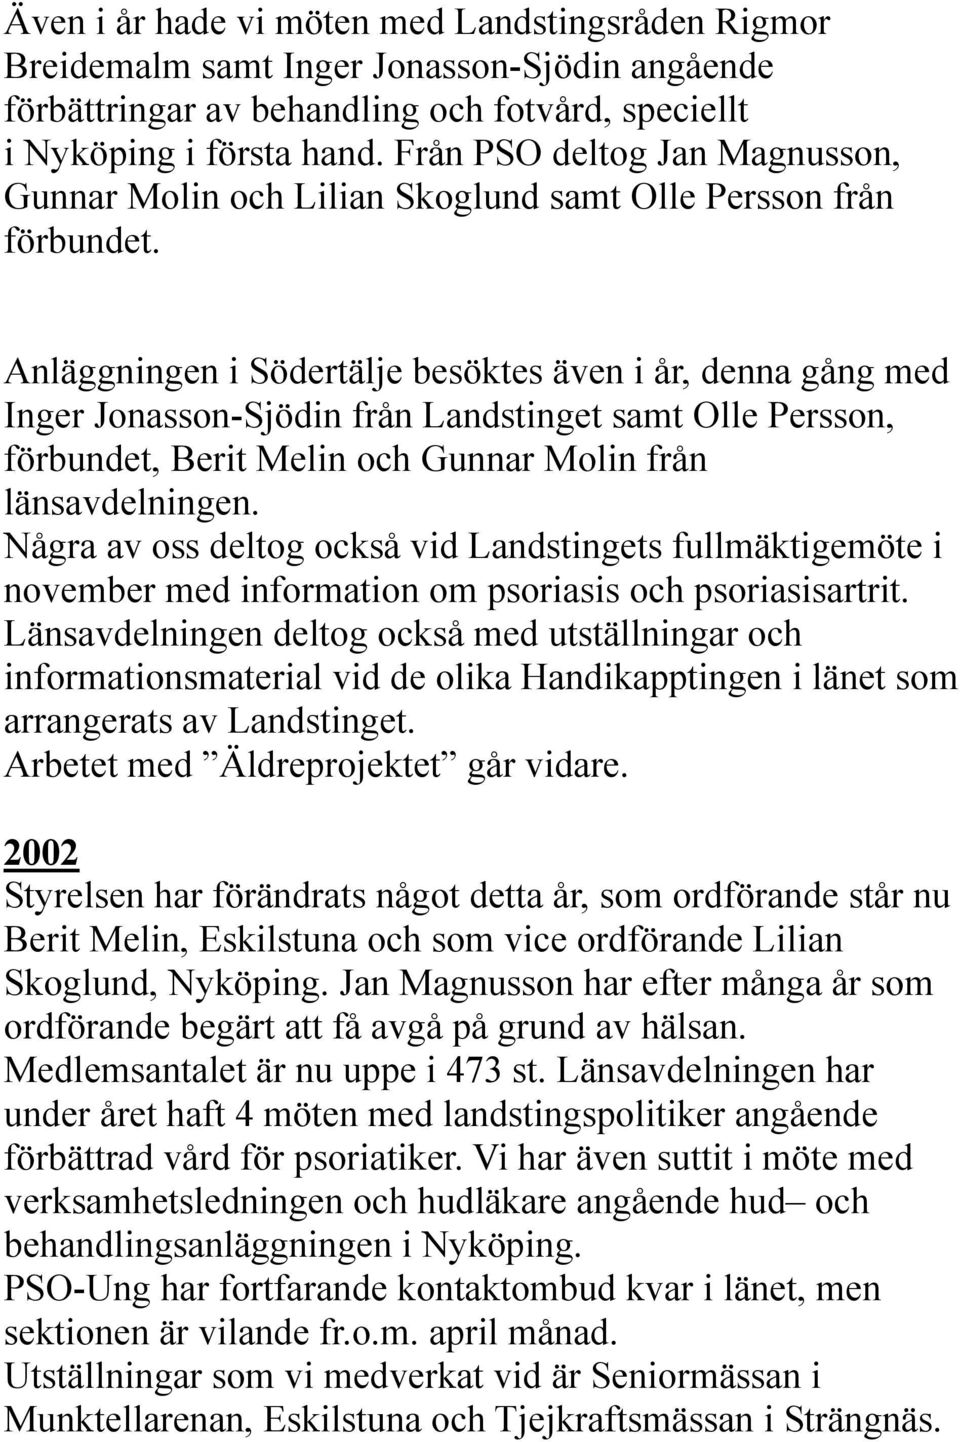 Anläggningen i Södertälje besöktes även i år, denna gång med Inger Jonasson-Sjödin från Landstinget samt Olle Persson, förbundet, Berit Melin och Gunnar Molin från länsavdelningen.